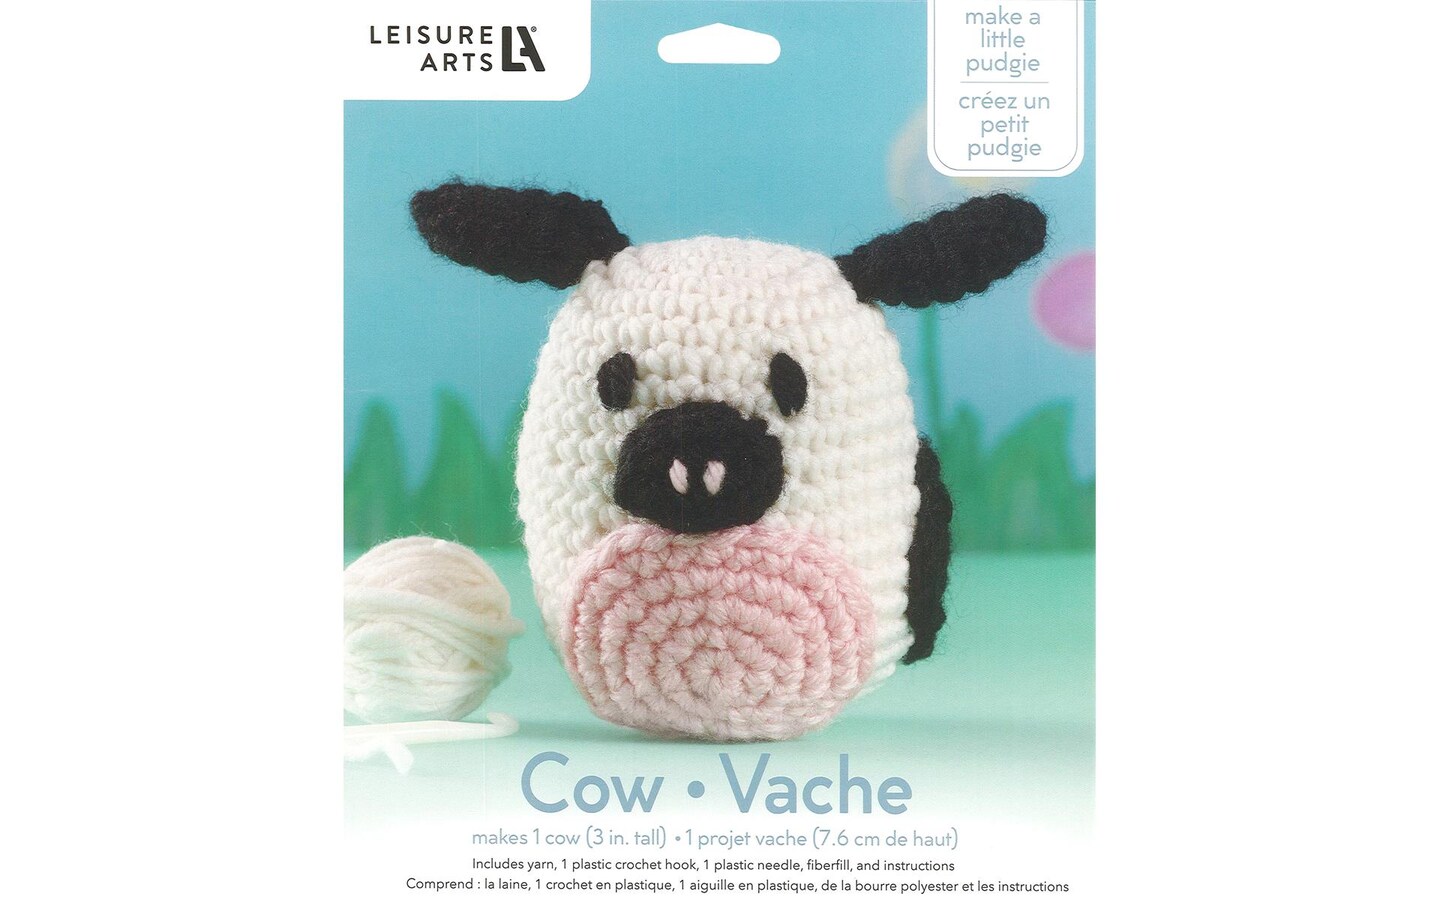  Crochet Animal Kit, DIY Crochet Kit For Beginners